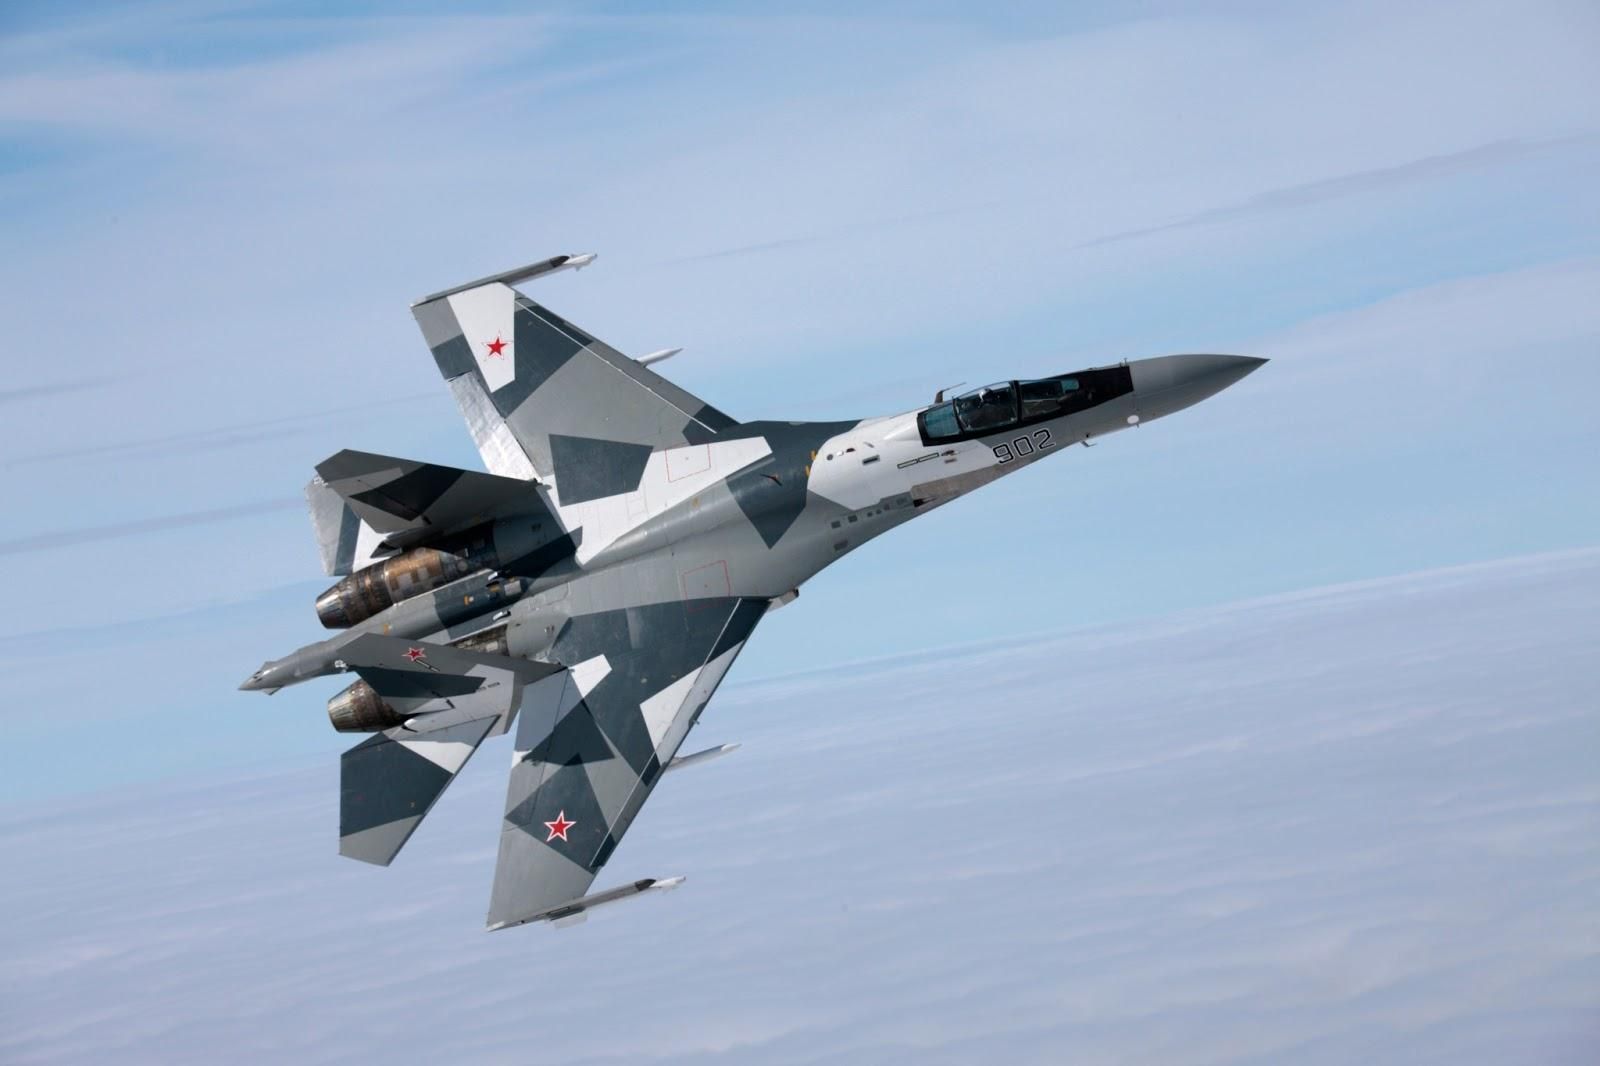 Россия может нарушить воздушное пространство Украины, – военный эксперт об учениях "Запад-2017"